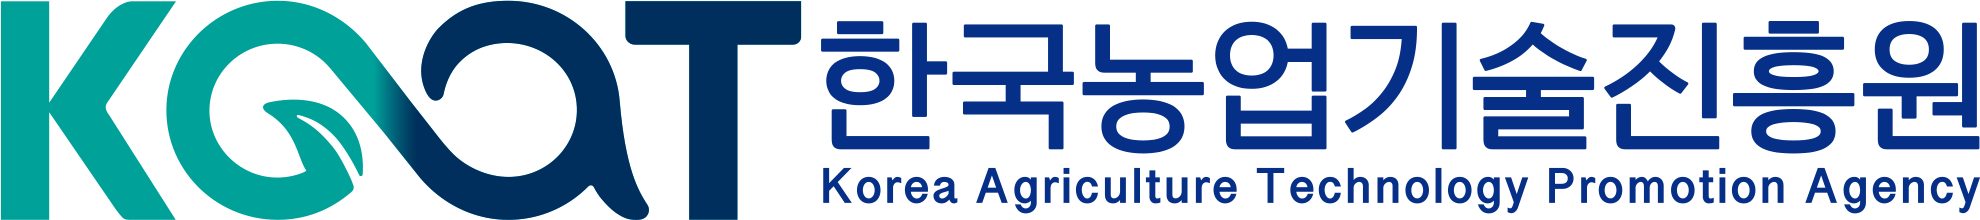 한국농업기술진흥원 로고